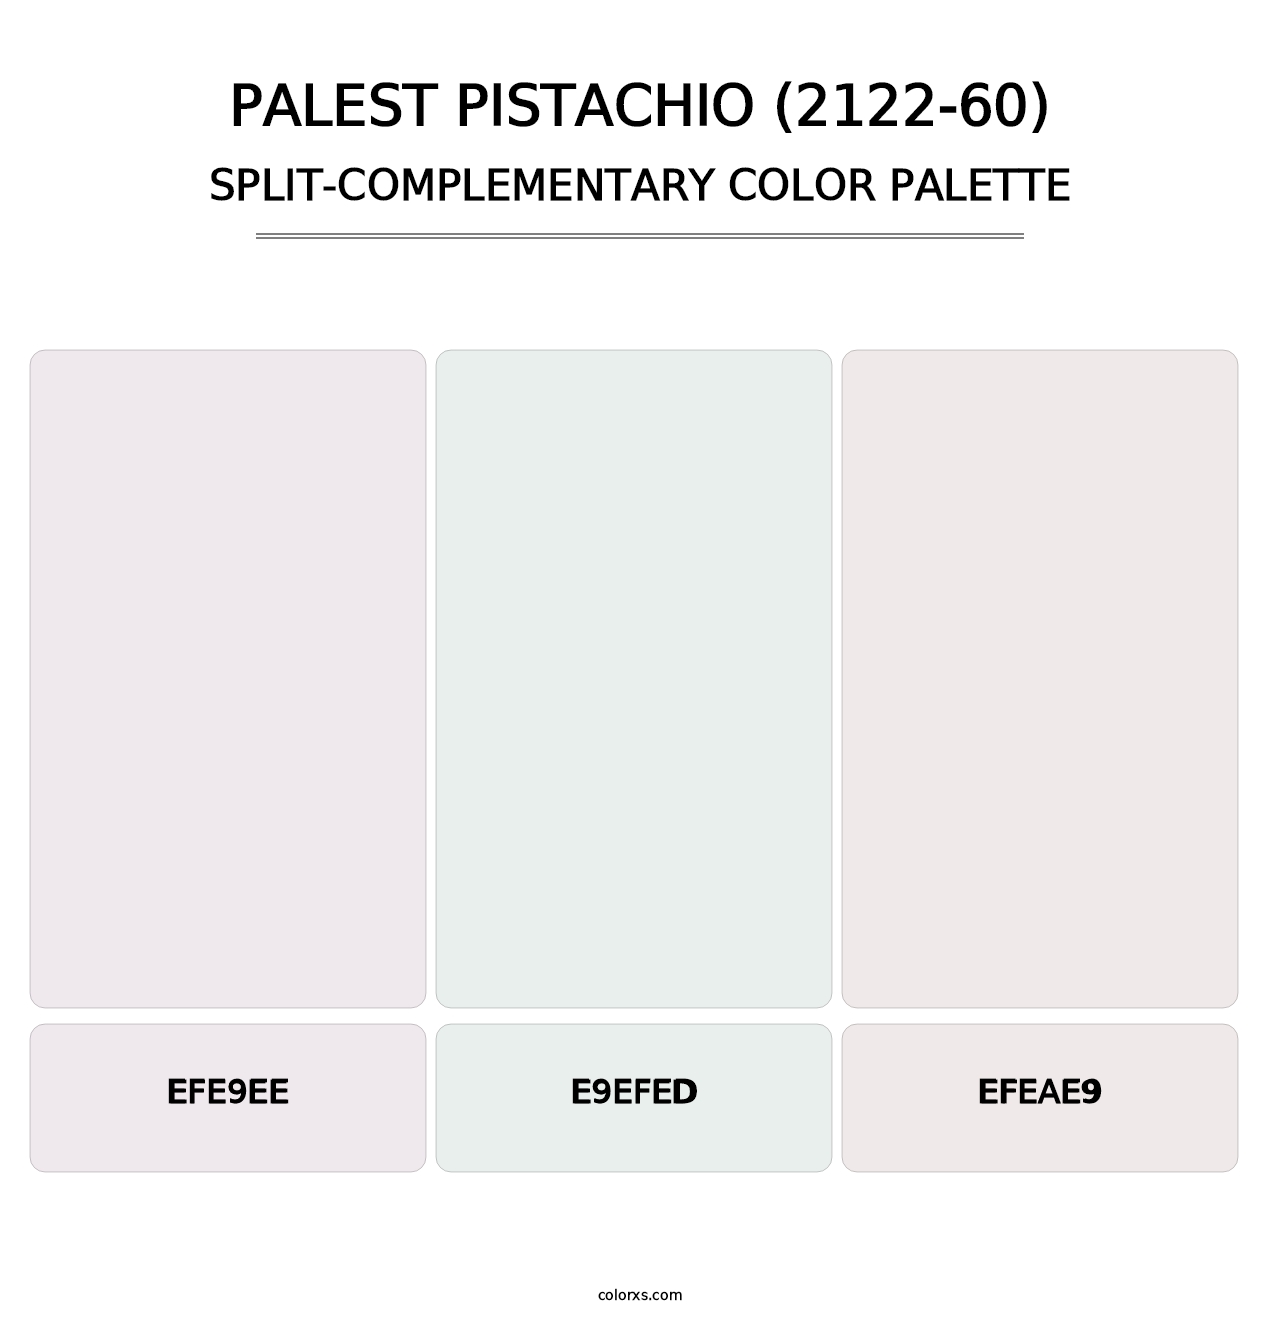 Palest Pistachio (2122-60) - Split-Complementary Color Palette